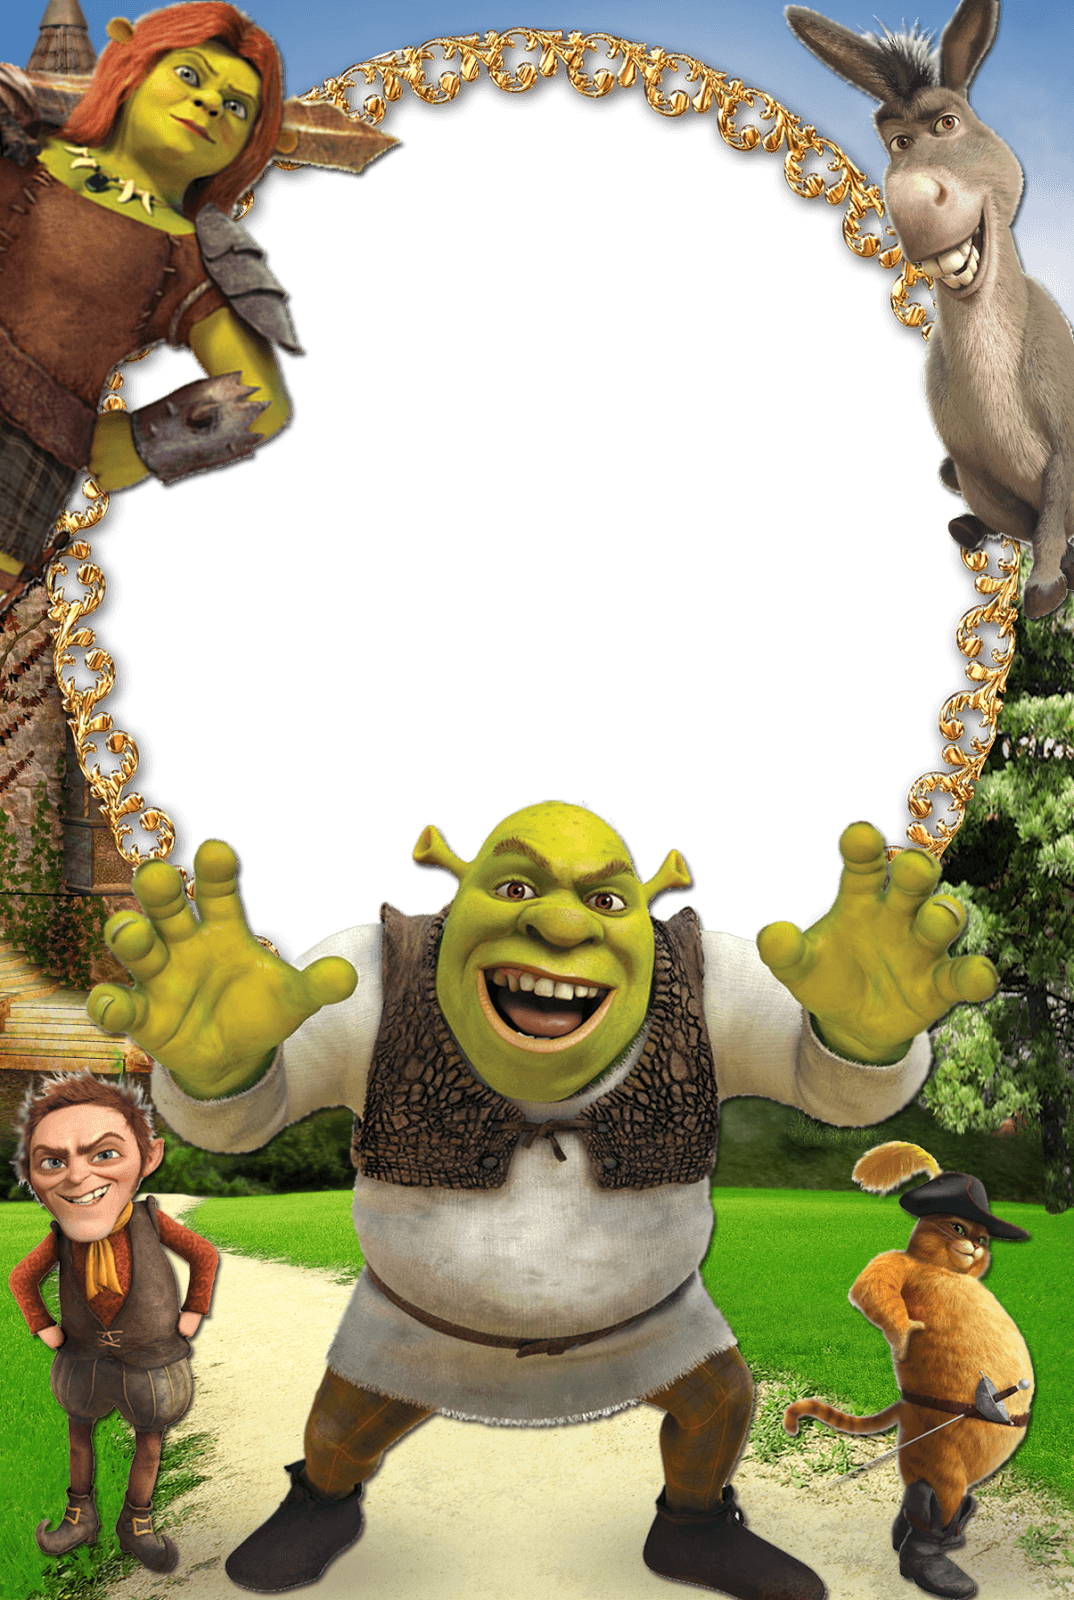 Shrek Frames Wallpaper High Quality